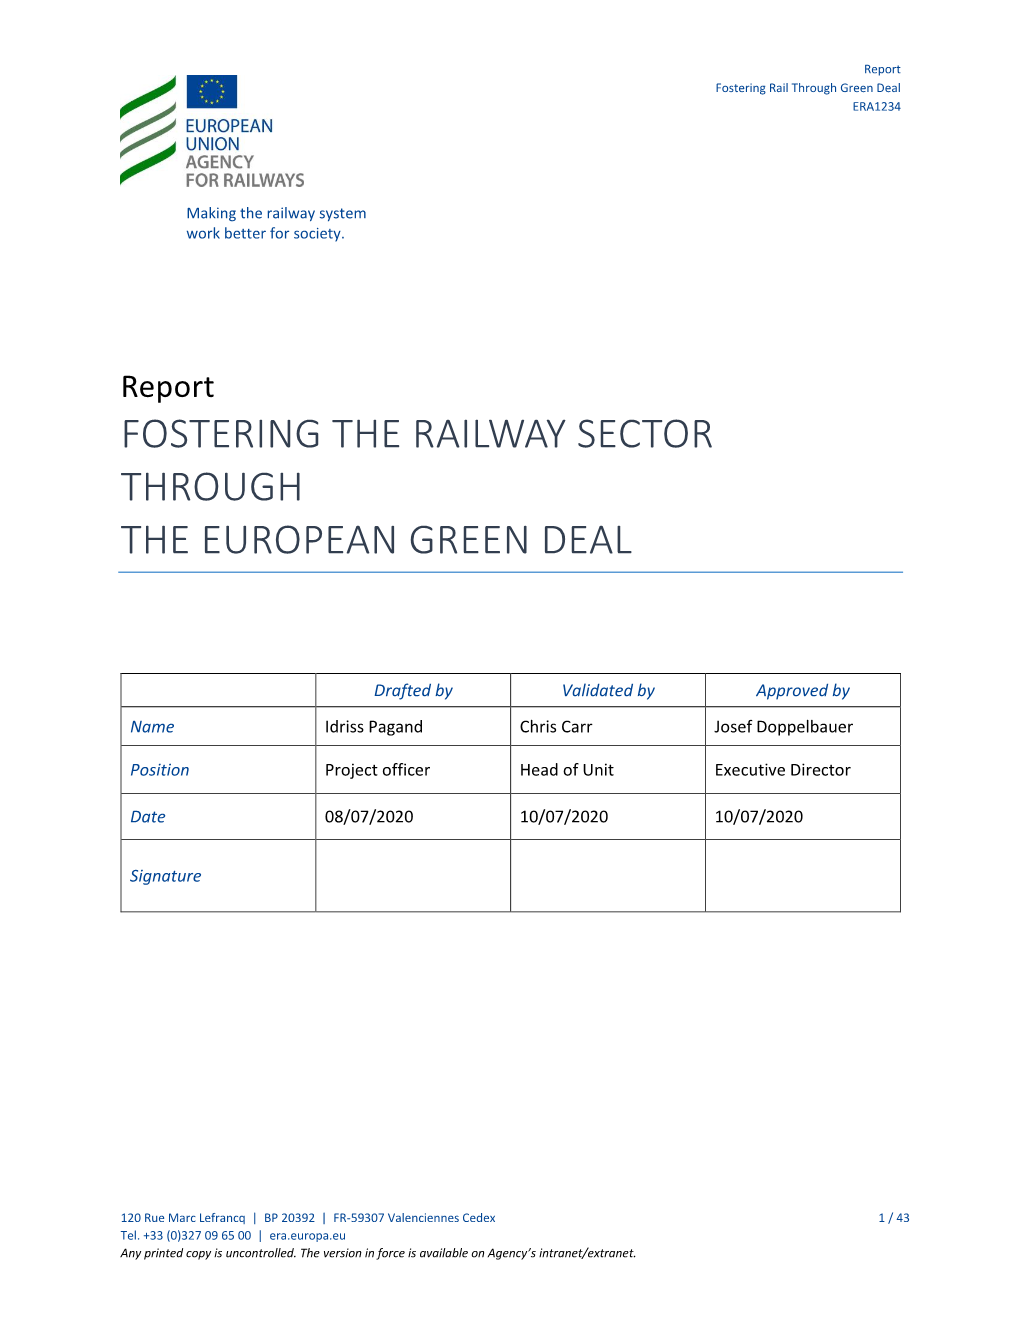 Report Fostering Rail Through Green Deal ERA1234